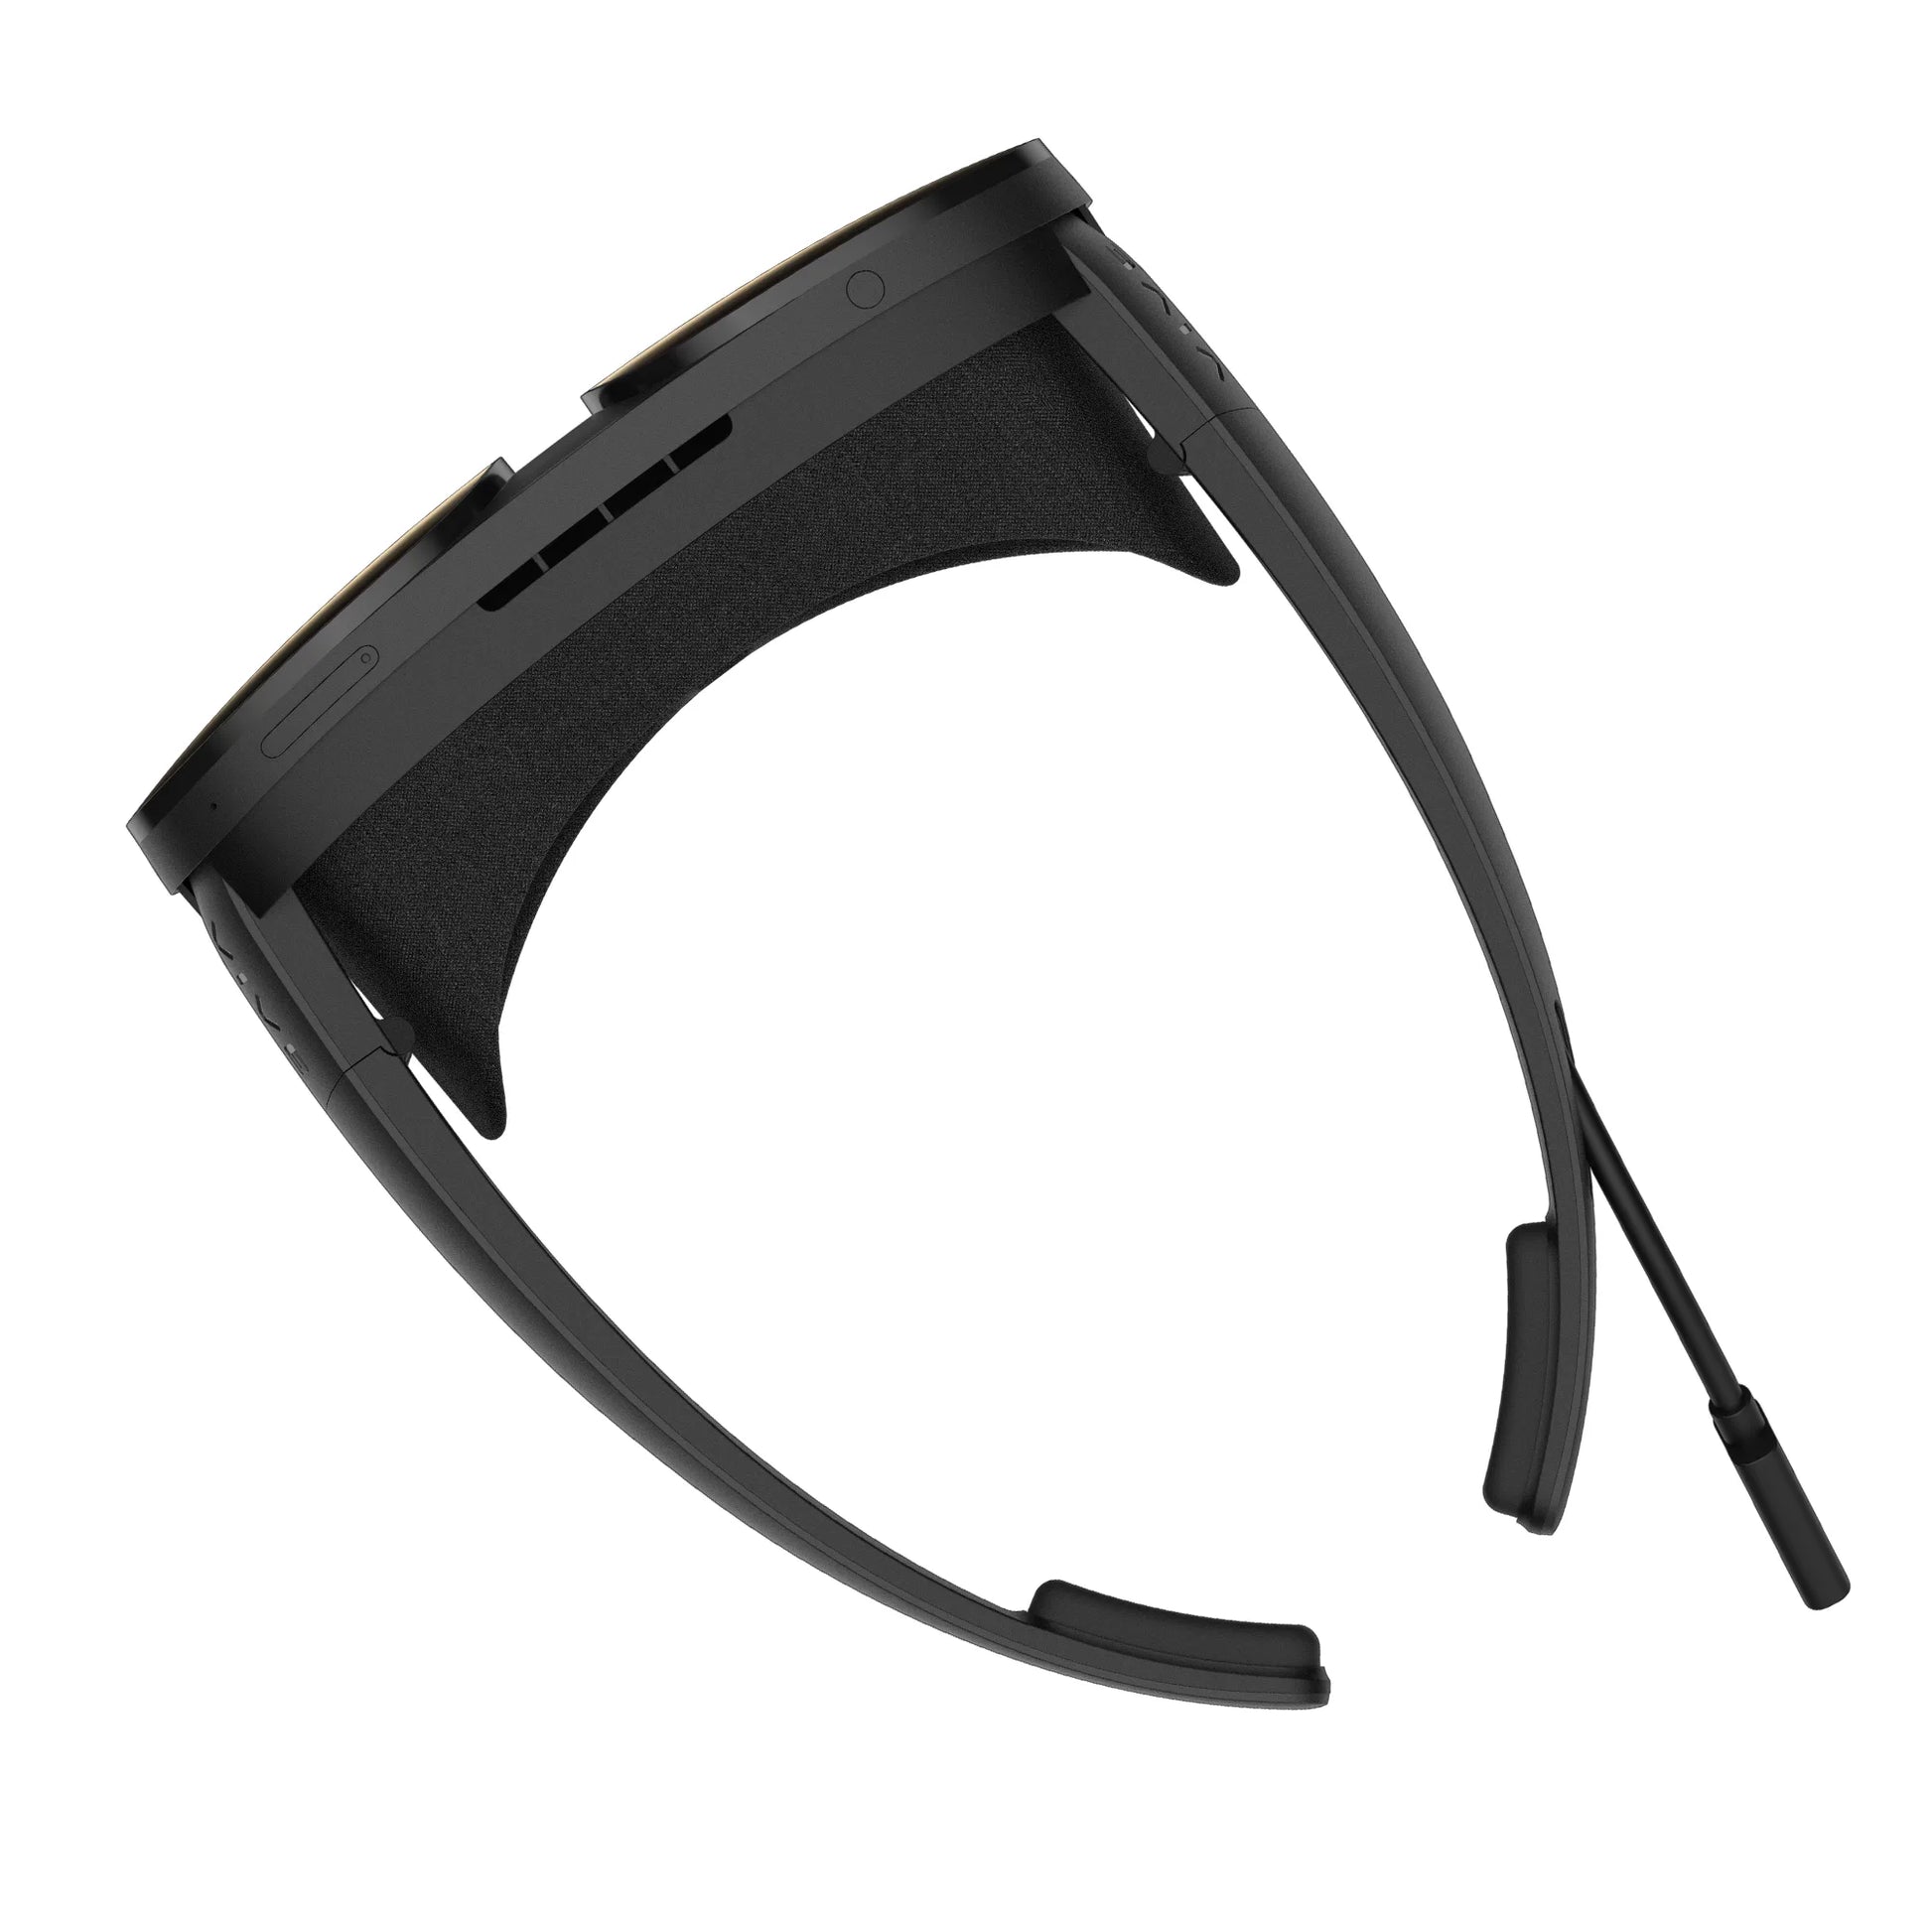 lunettes VR 6 DoF